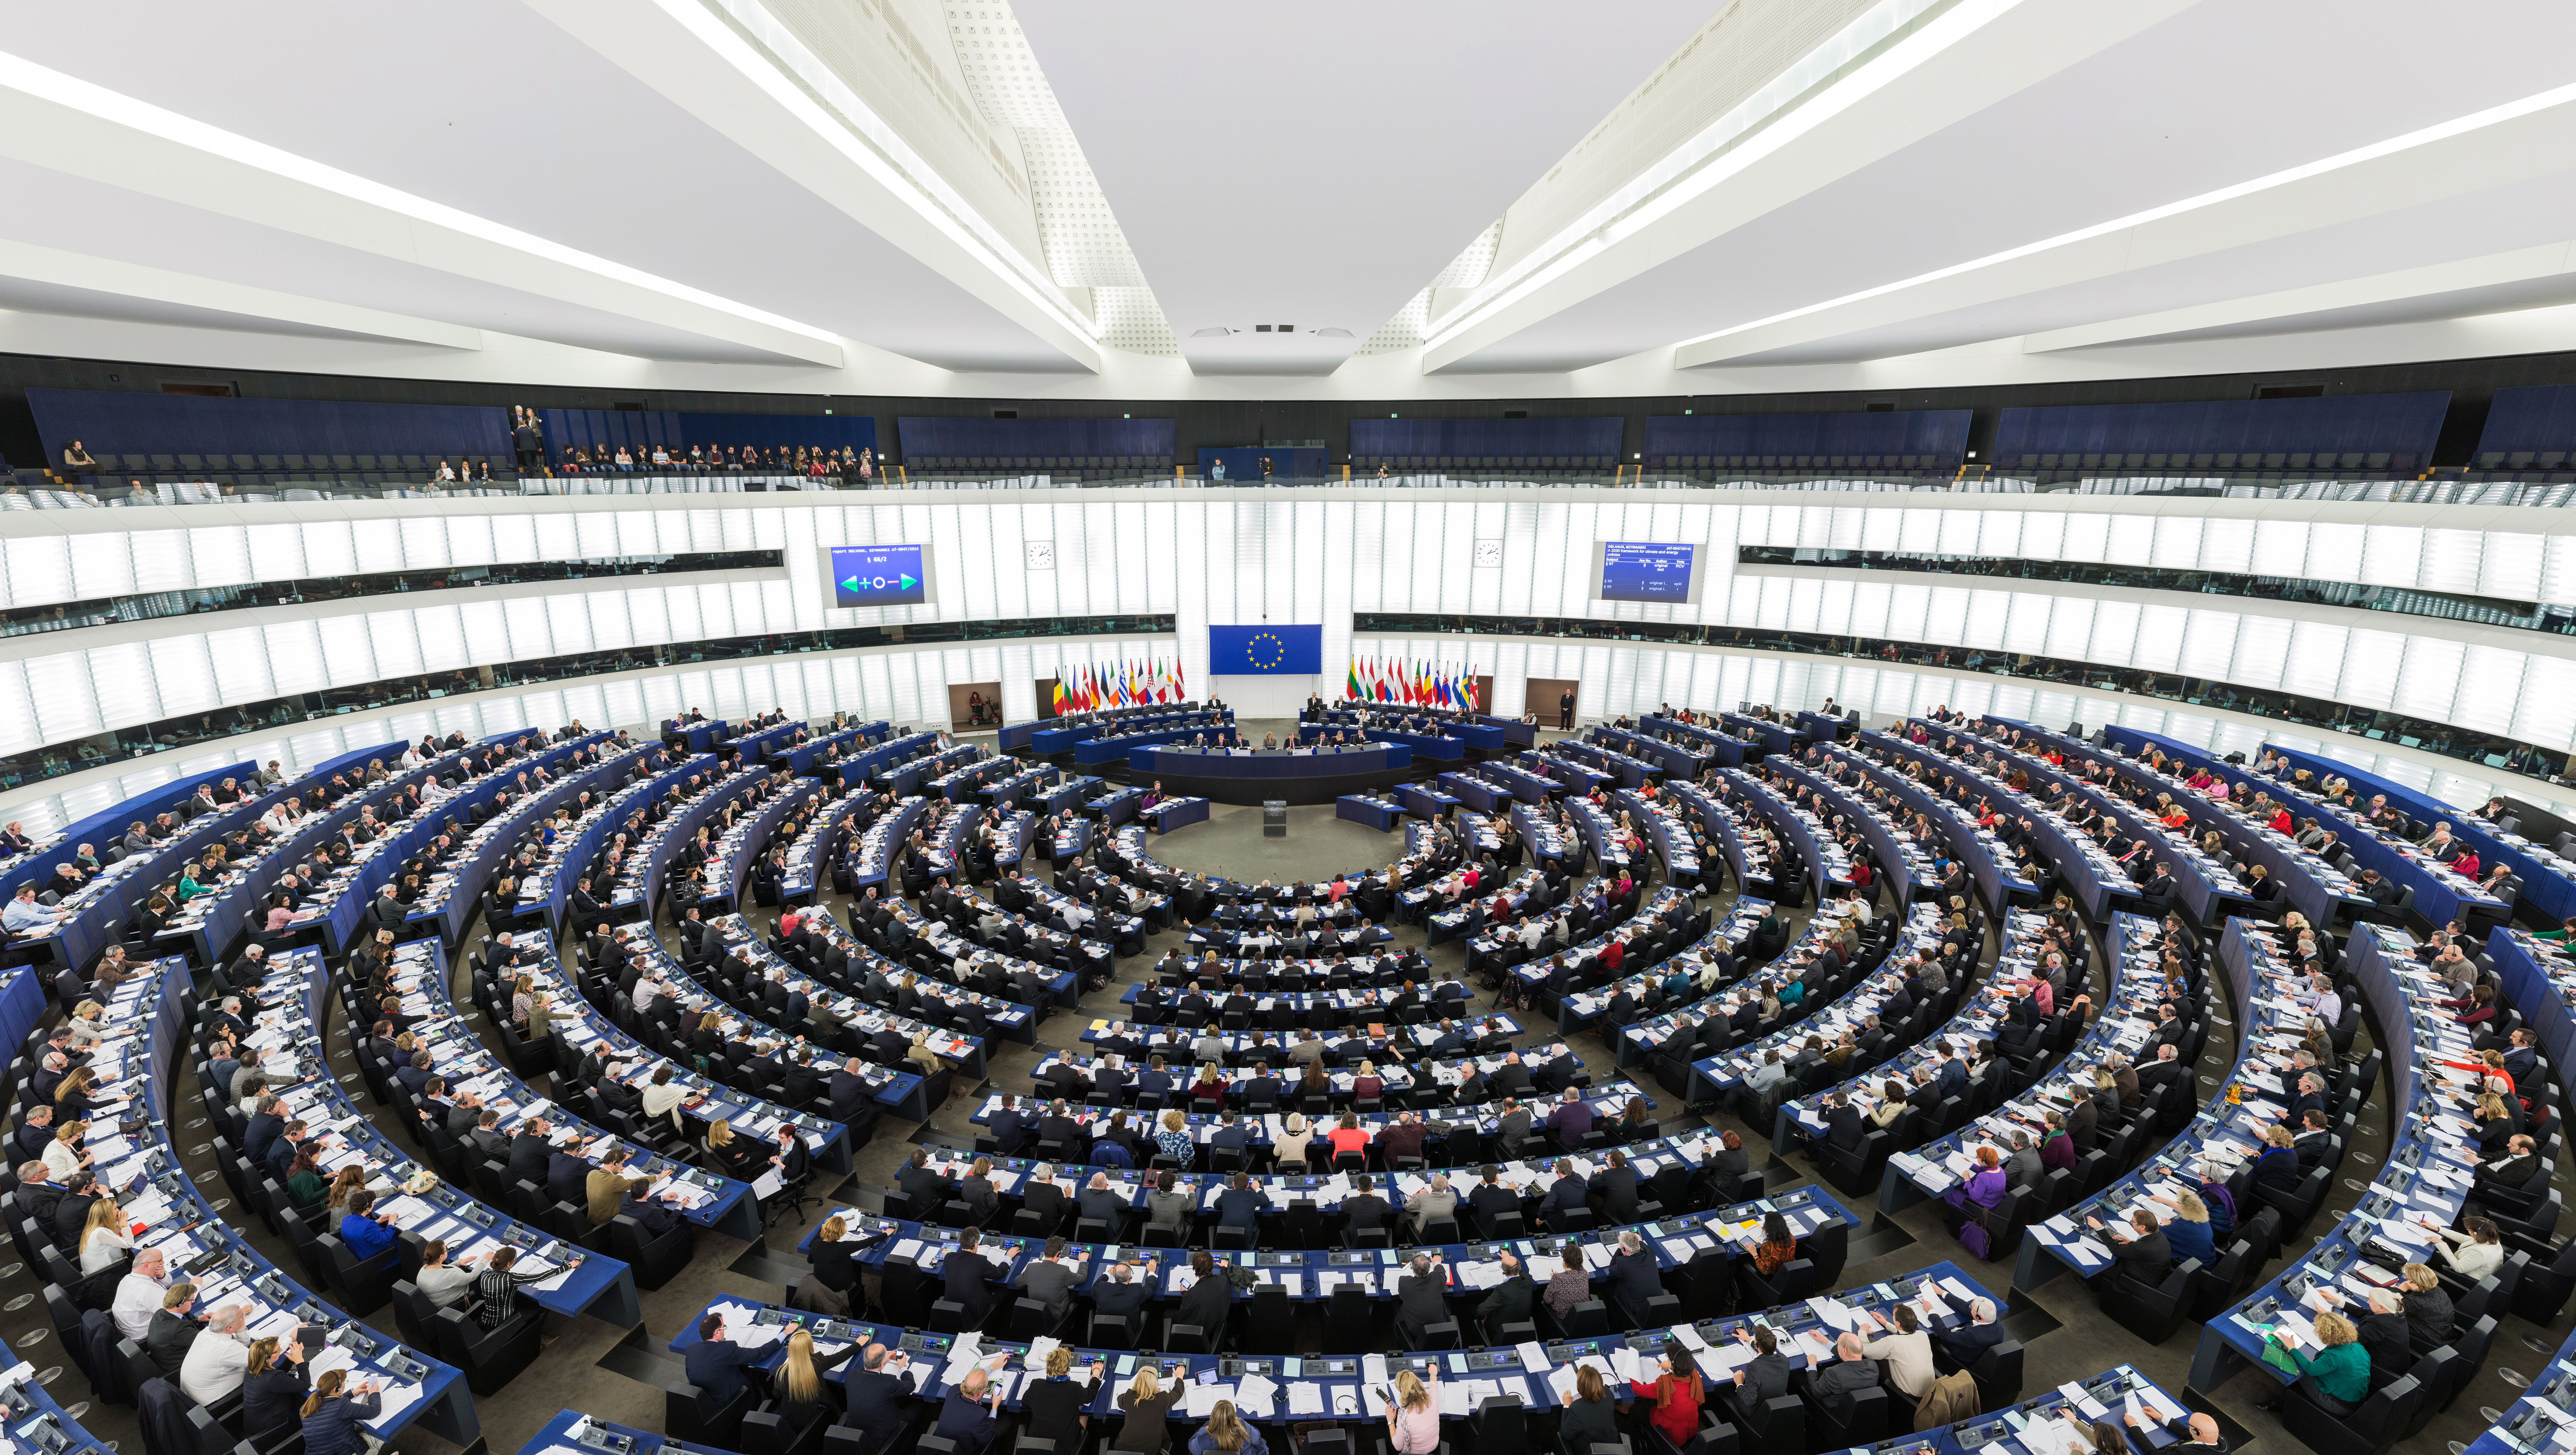  100 برلماني أوروبي يدعمون مركز العودة في الأمم المتحدة